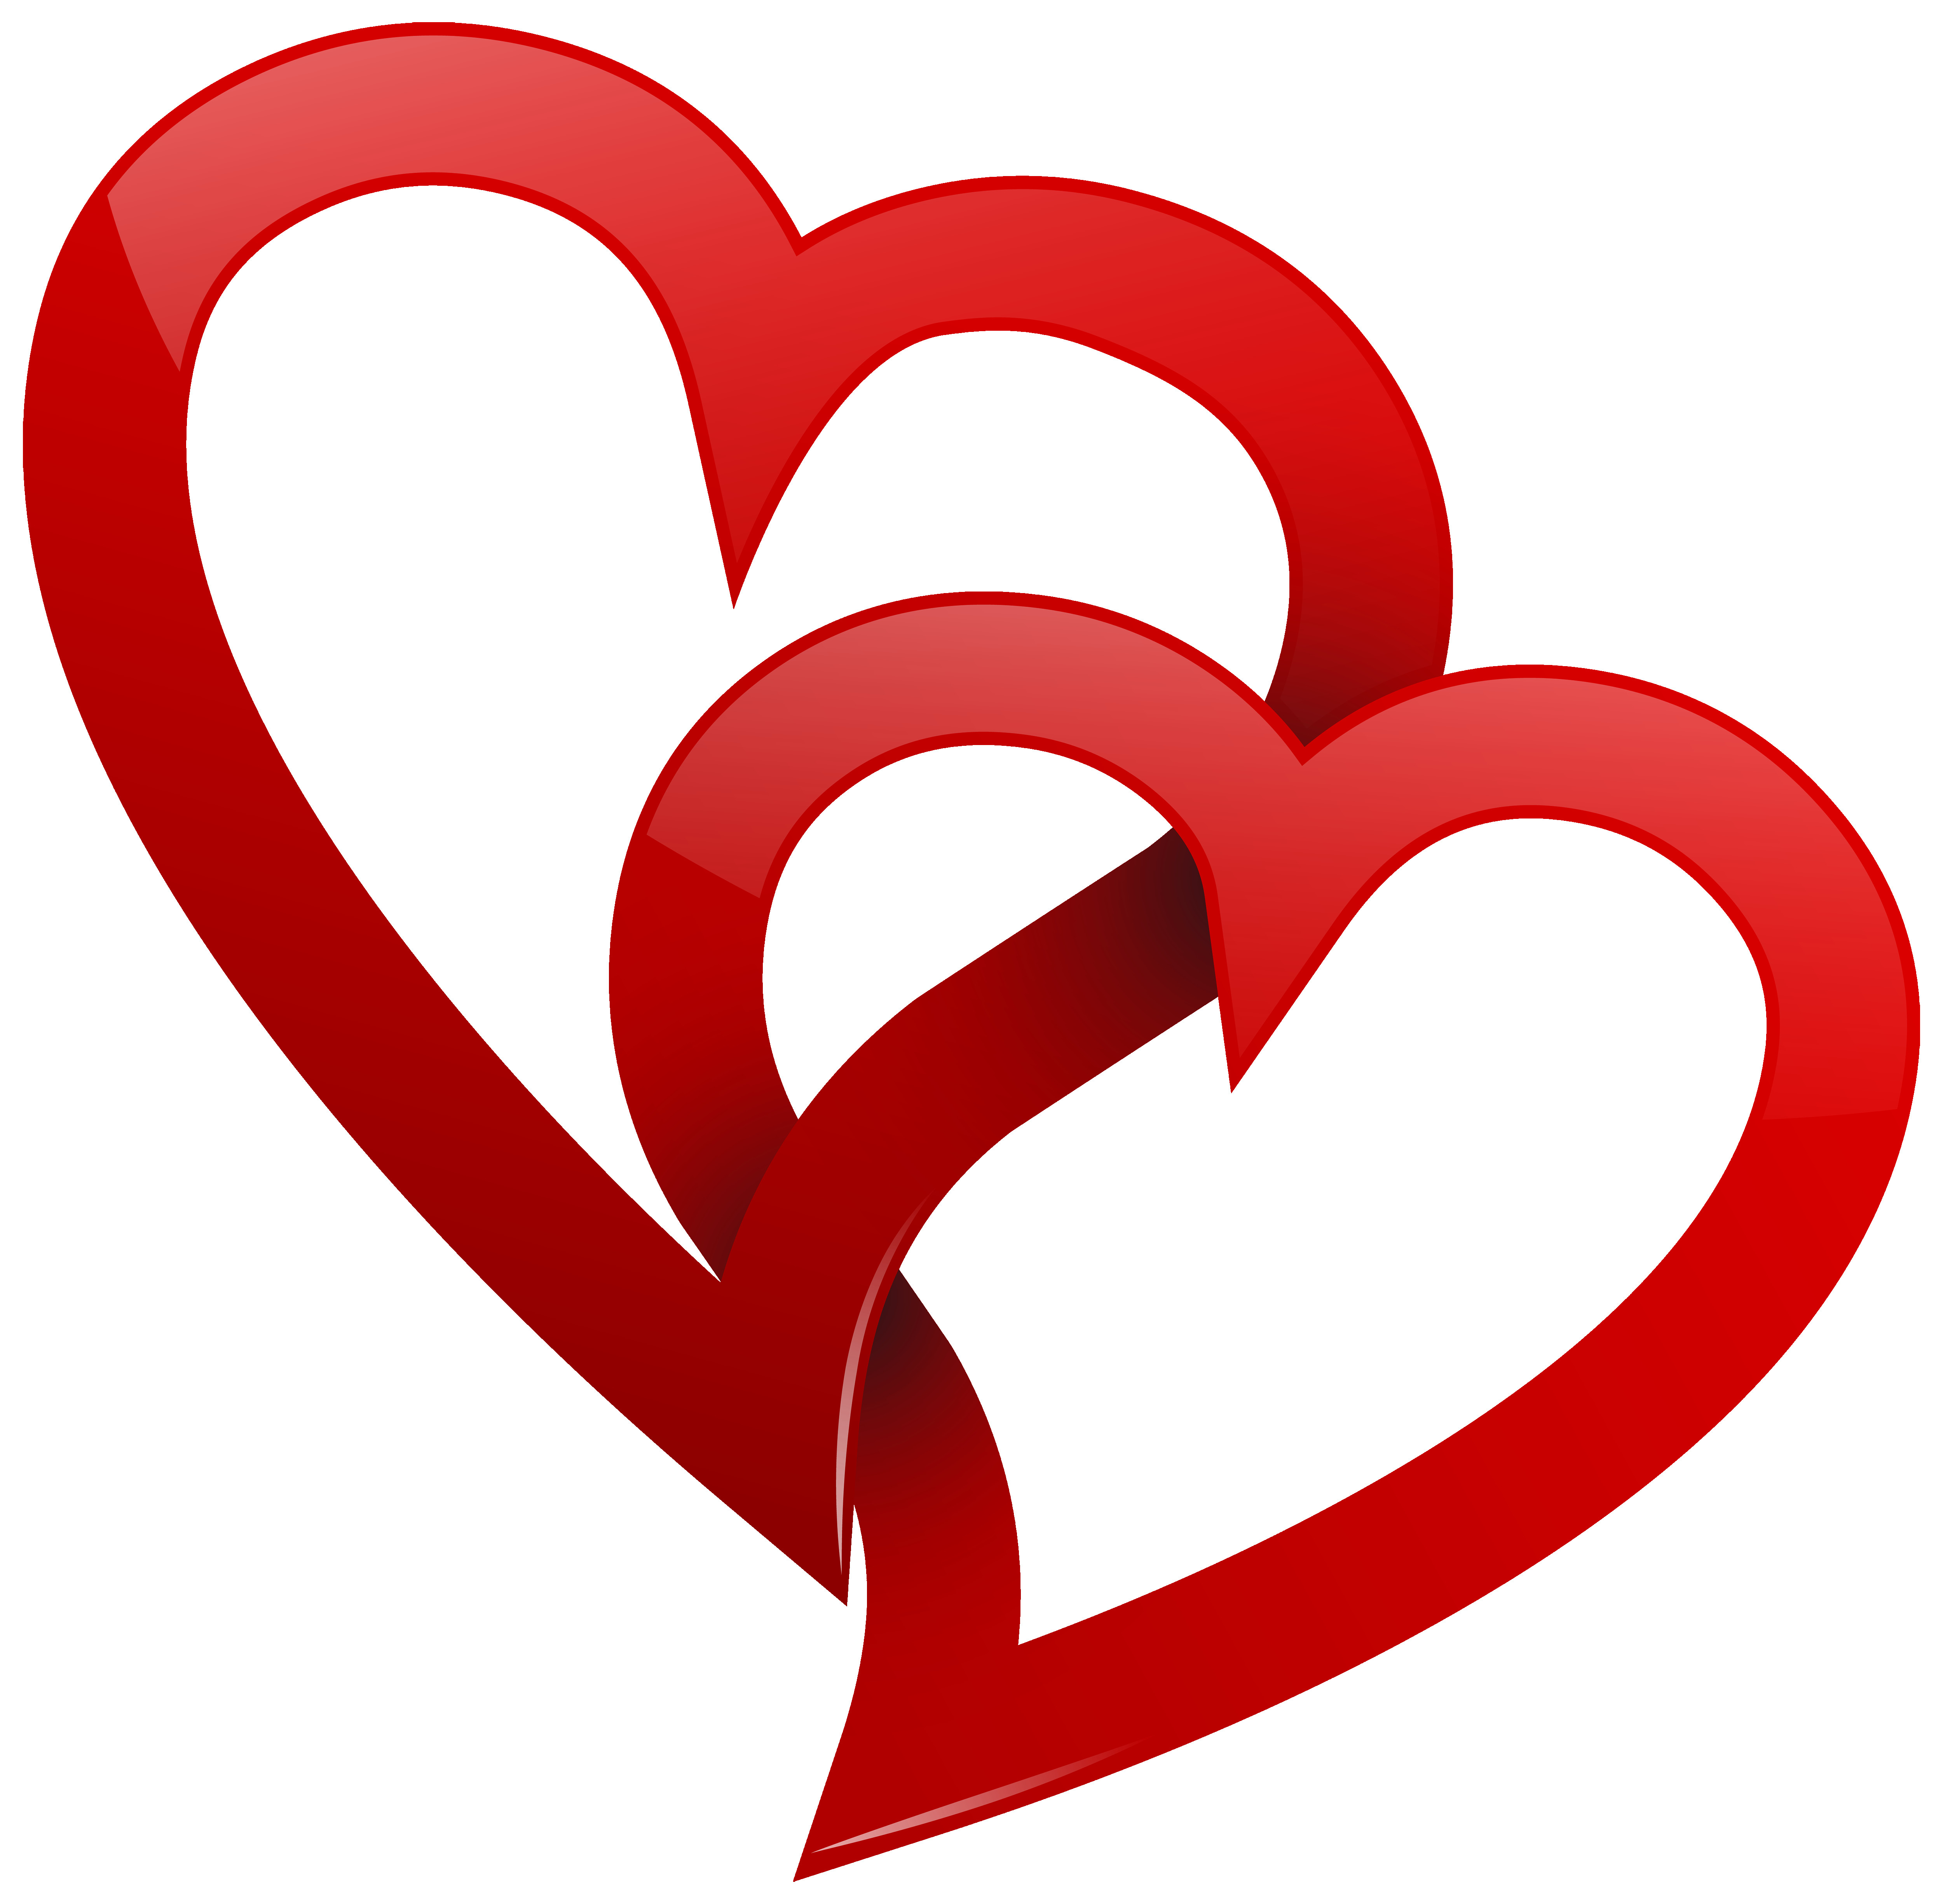 Love - Instagram Heart Logo P